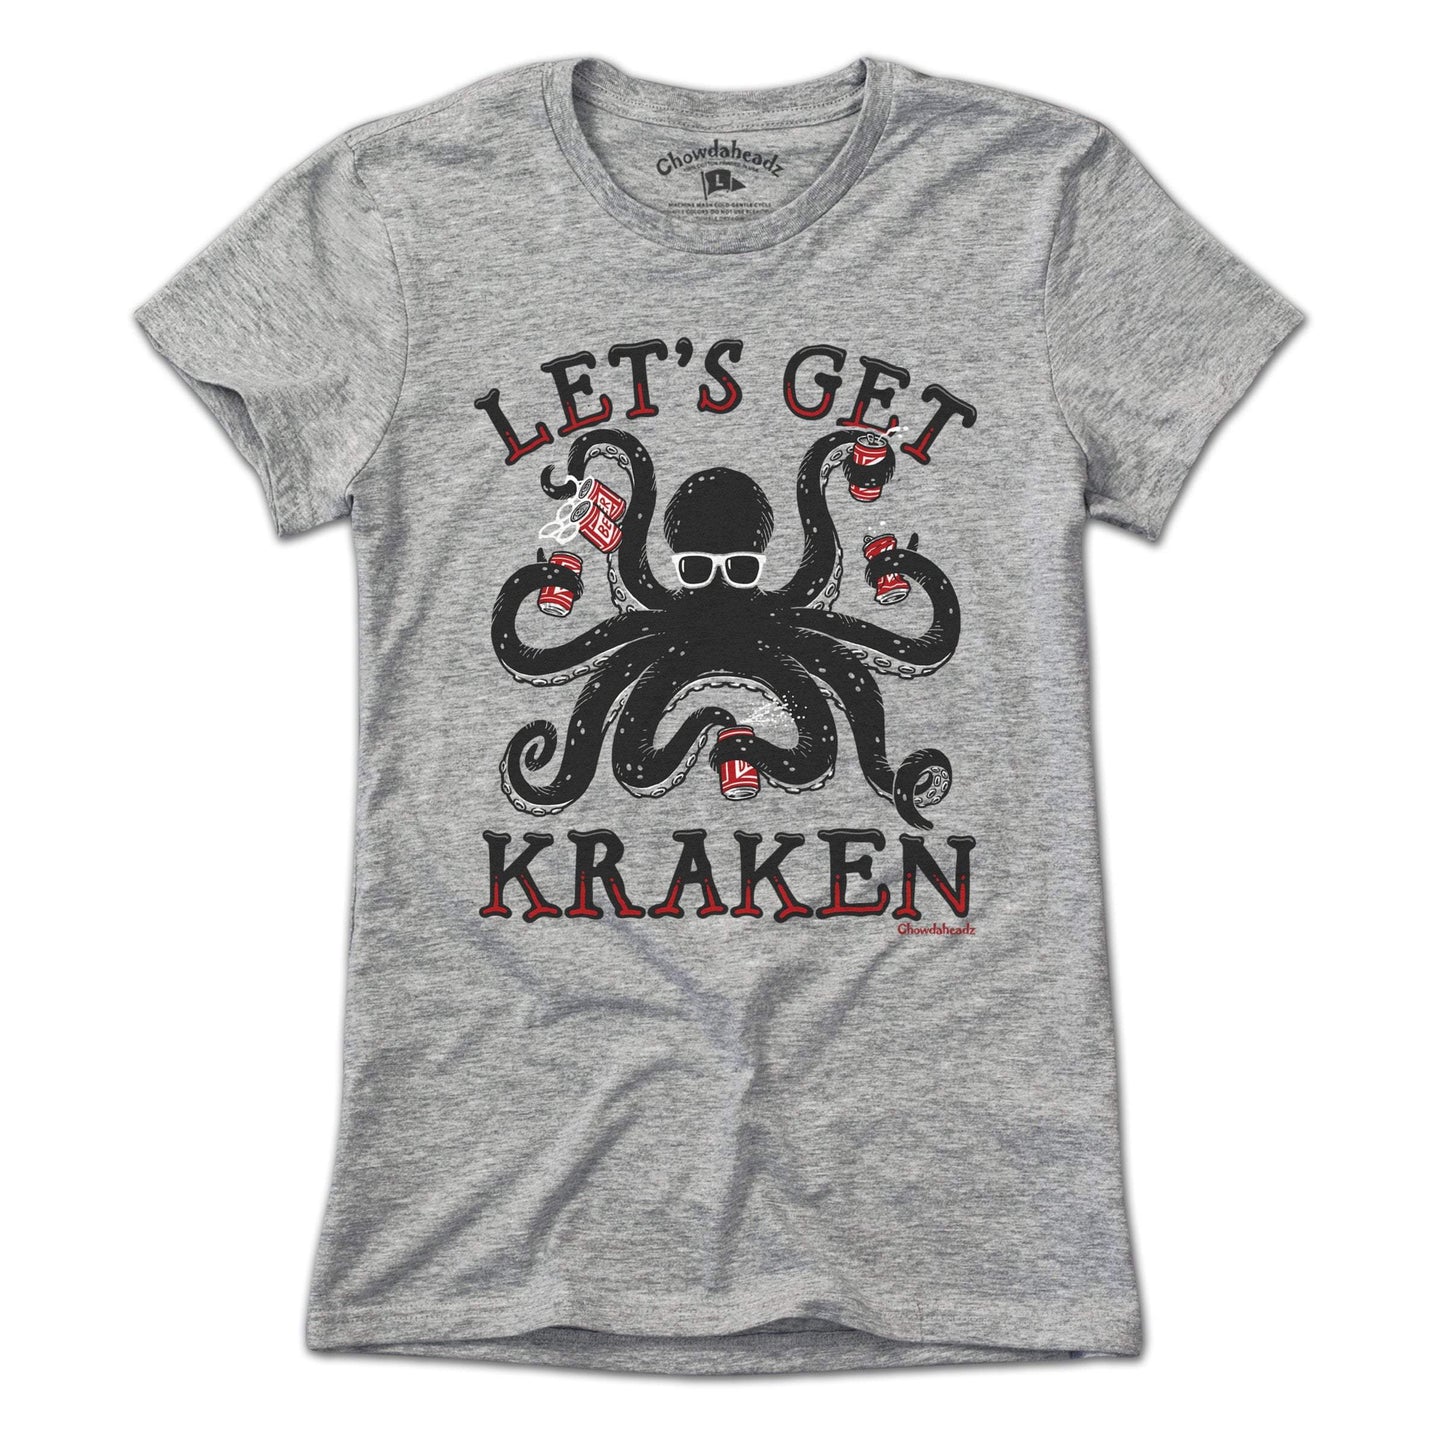 Let's Get Kraken T-Shirt - Chowdaheadz